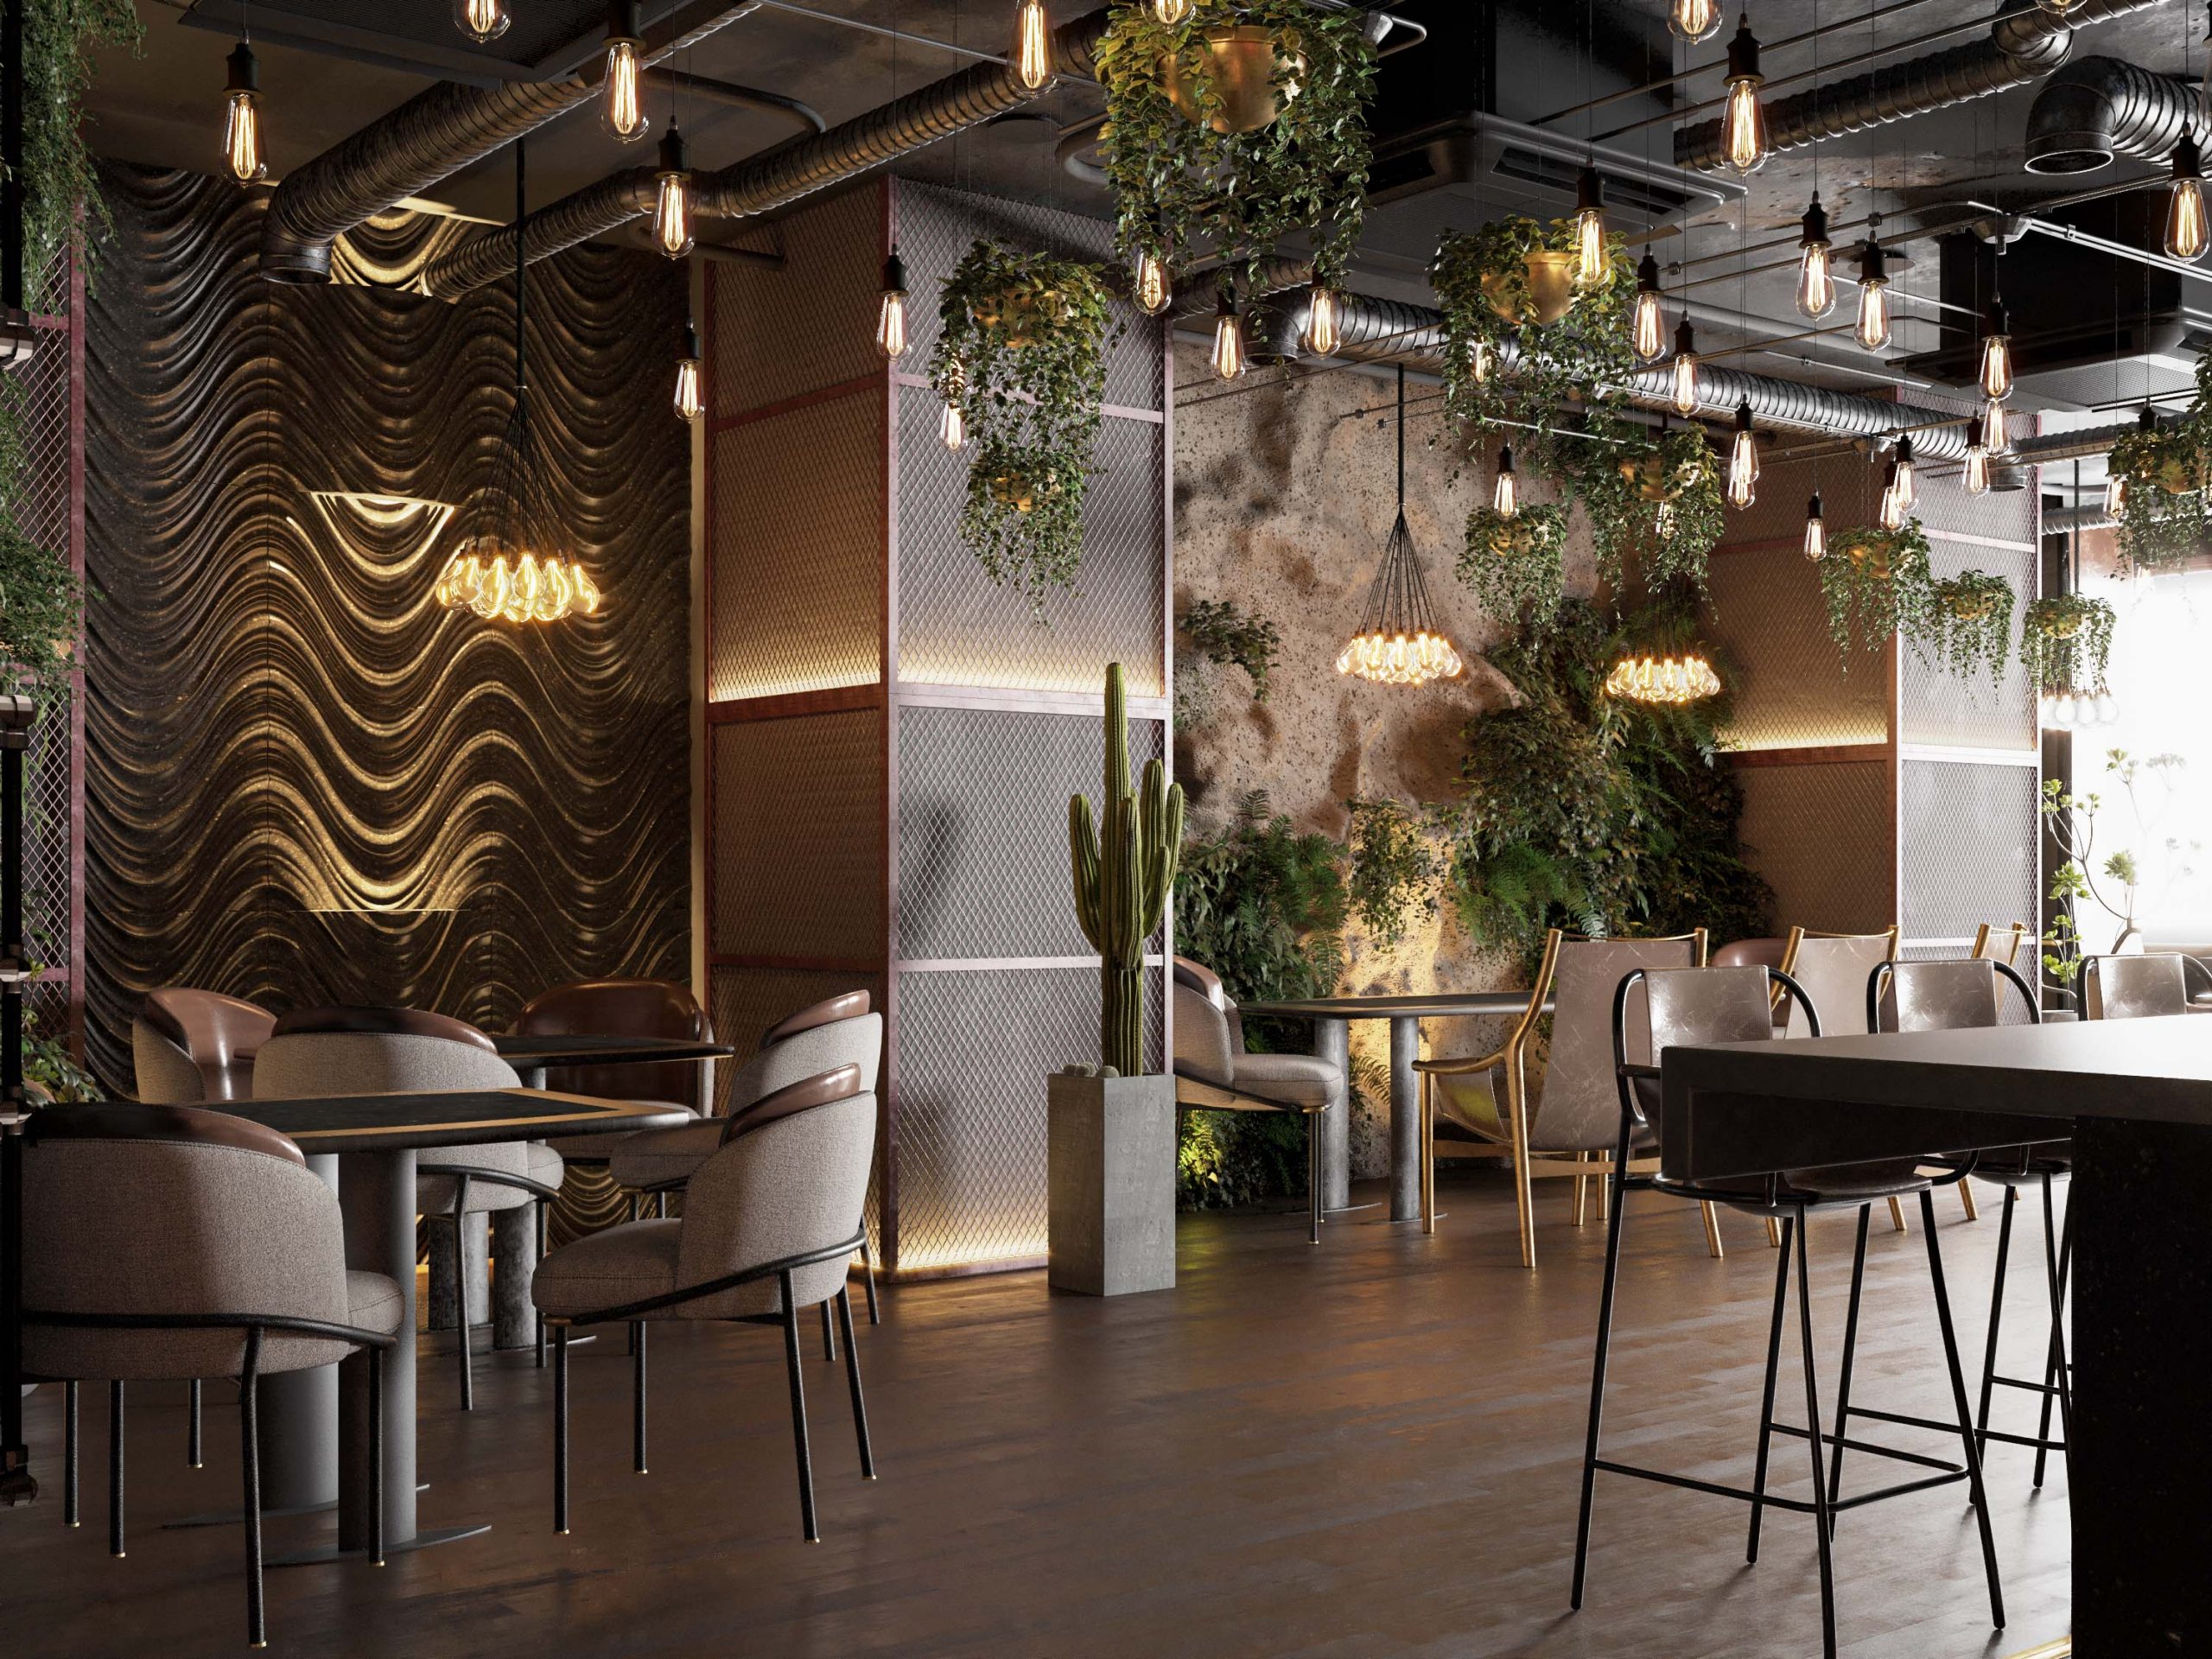 UNIQUE CAFE DESIGN - cafe - design - plants - mix styles 